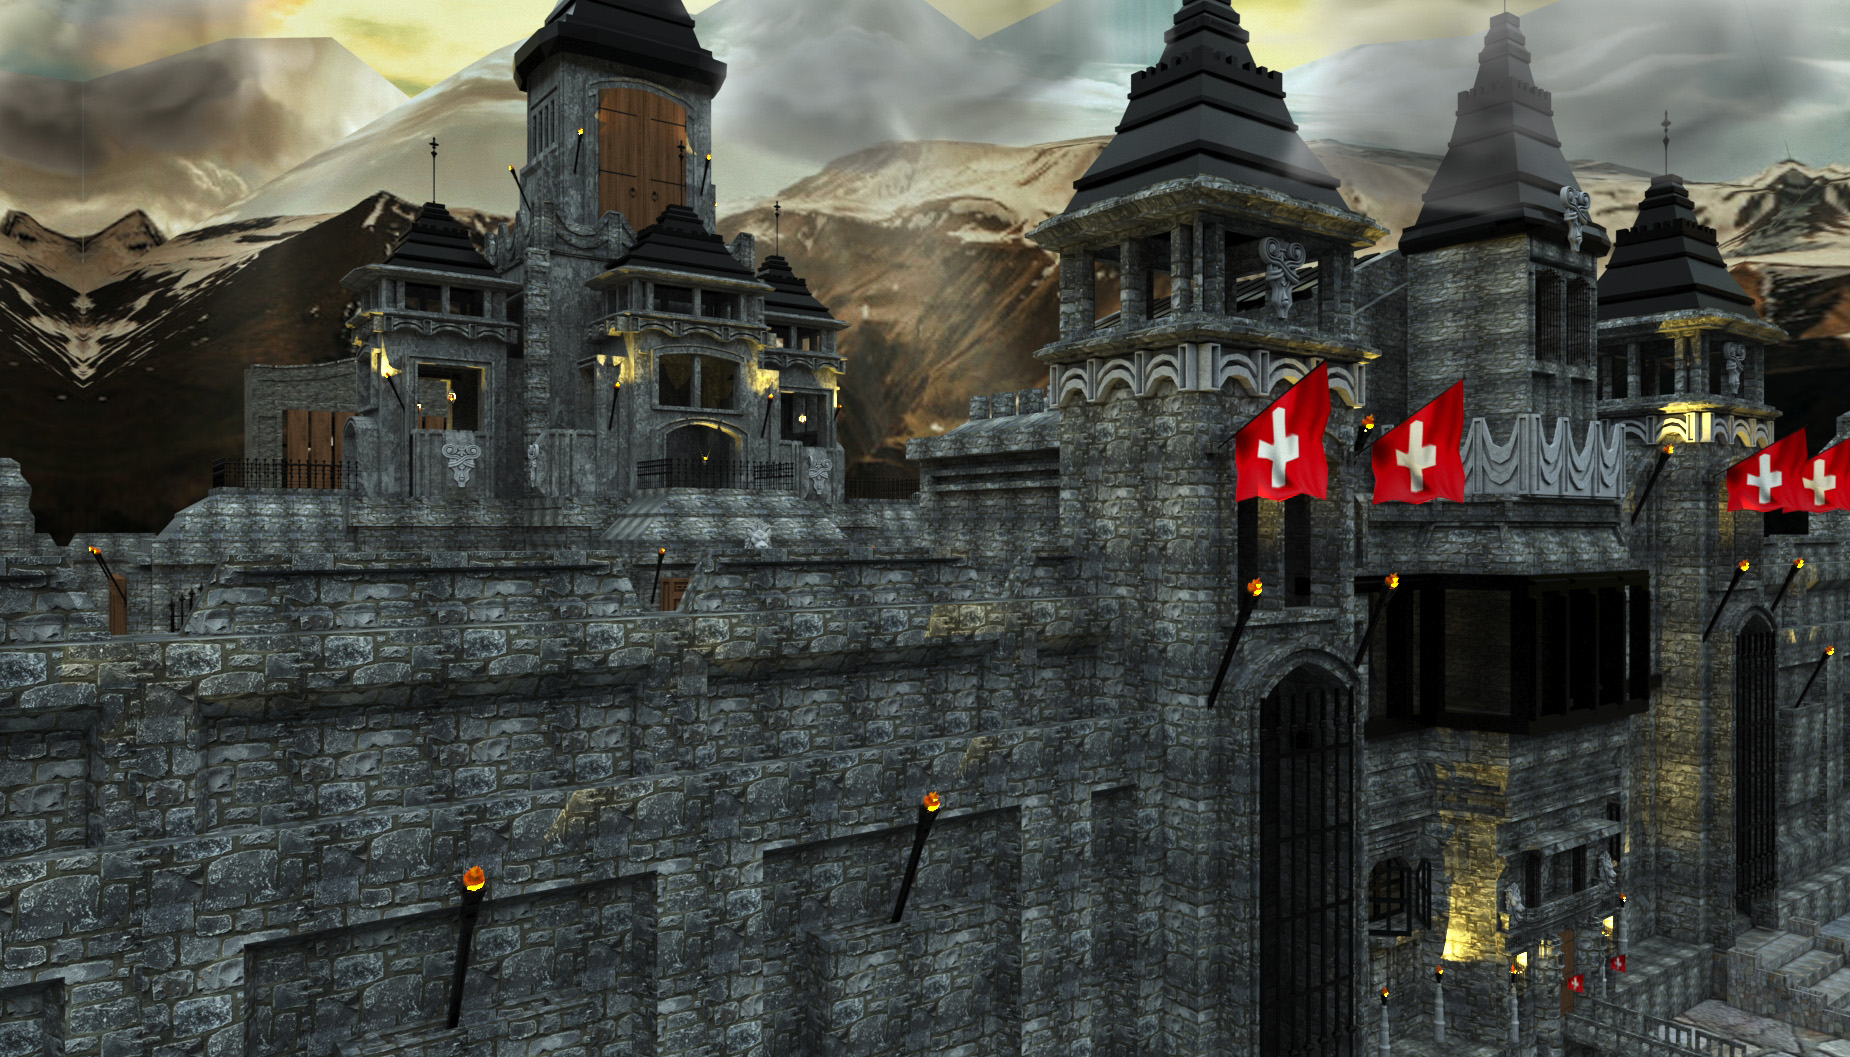 प्राचीन महल 3d max vray 3.0 में प्रस्तुत छवि